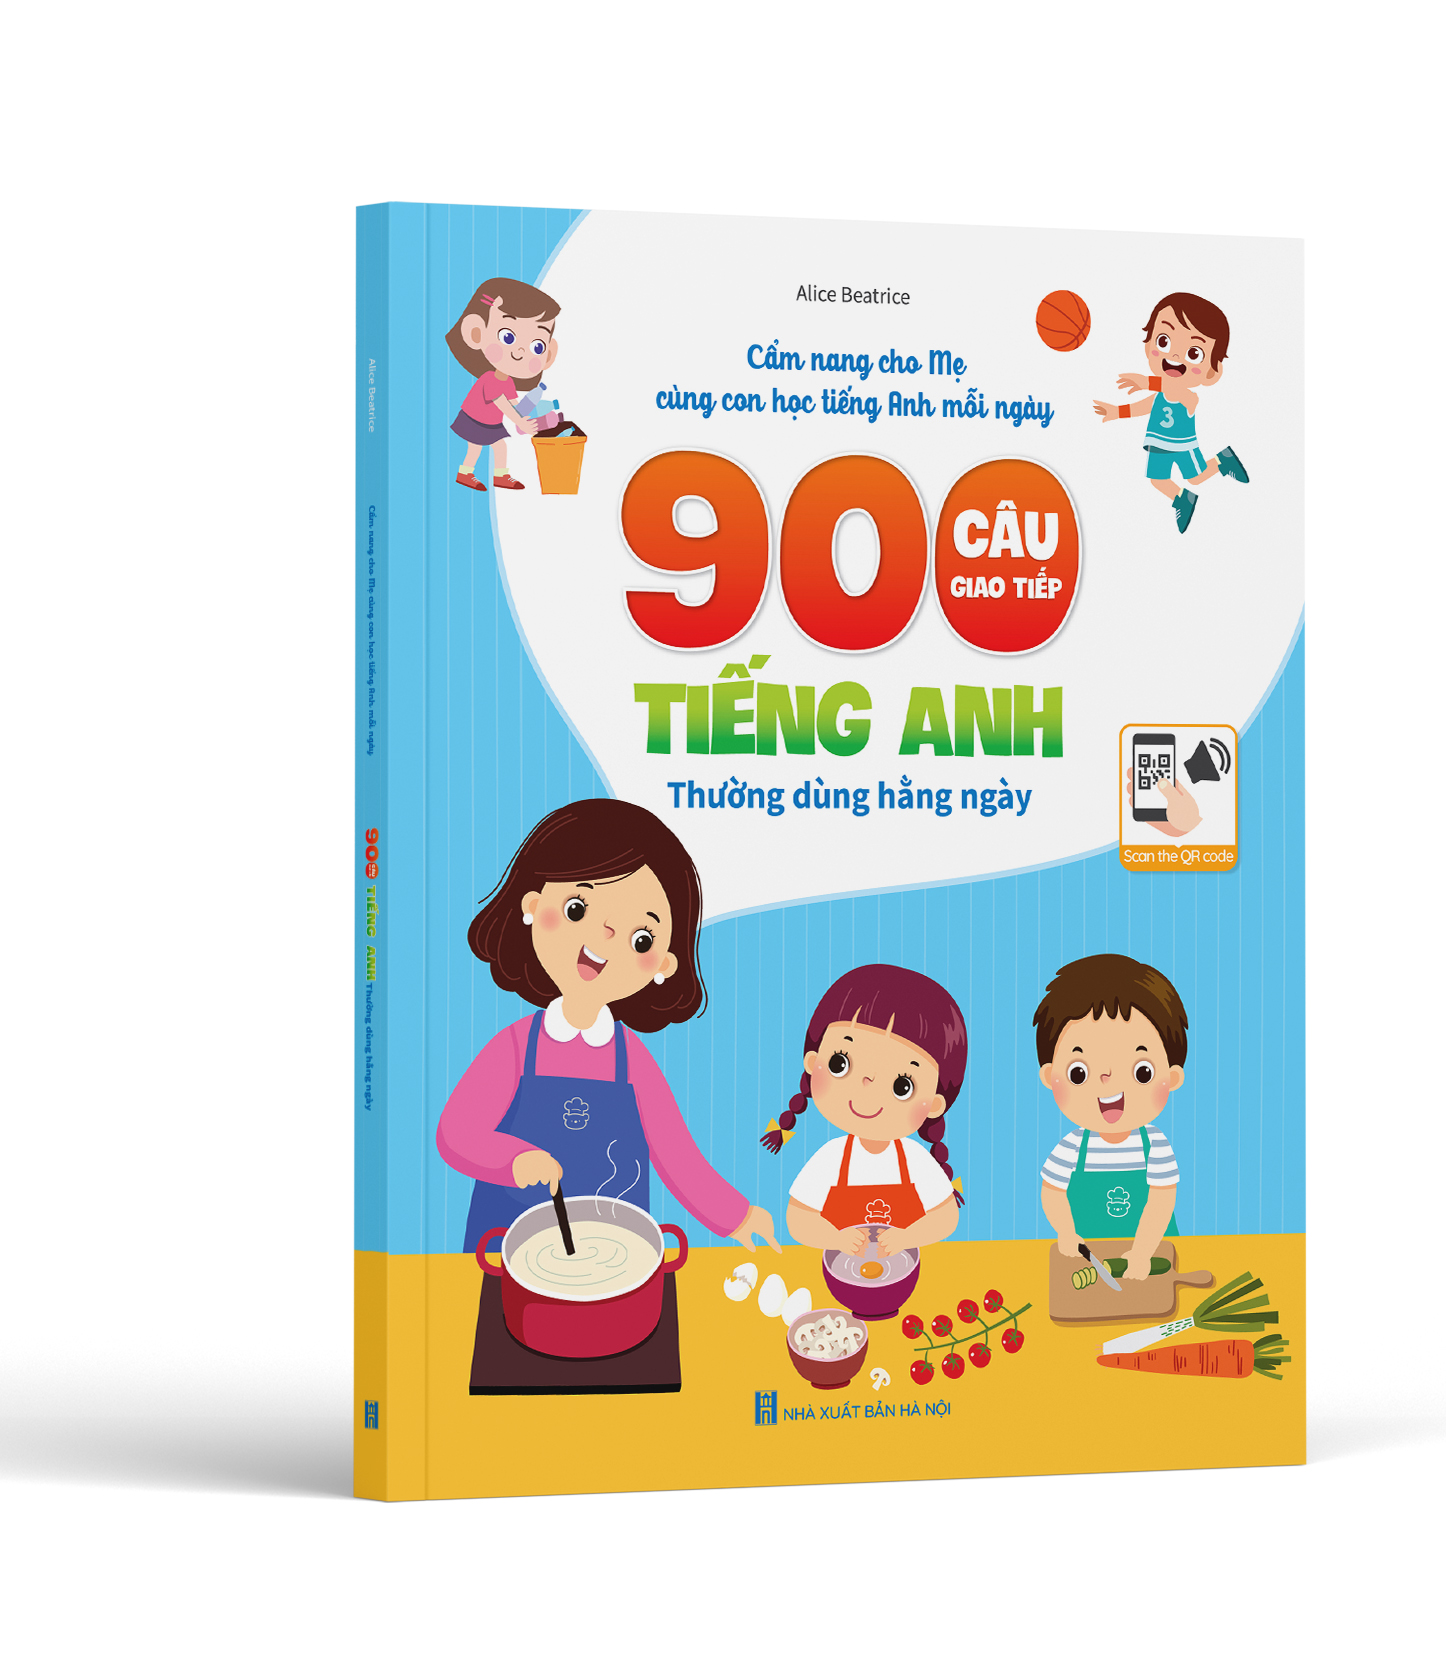 Sách Việt Hà - 900 Câu Giao Tiếp Tiếng Anh Thường Dùng Hằng Ngày